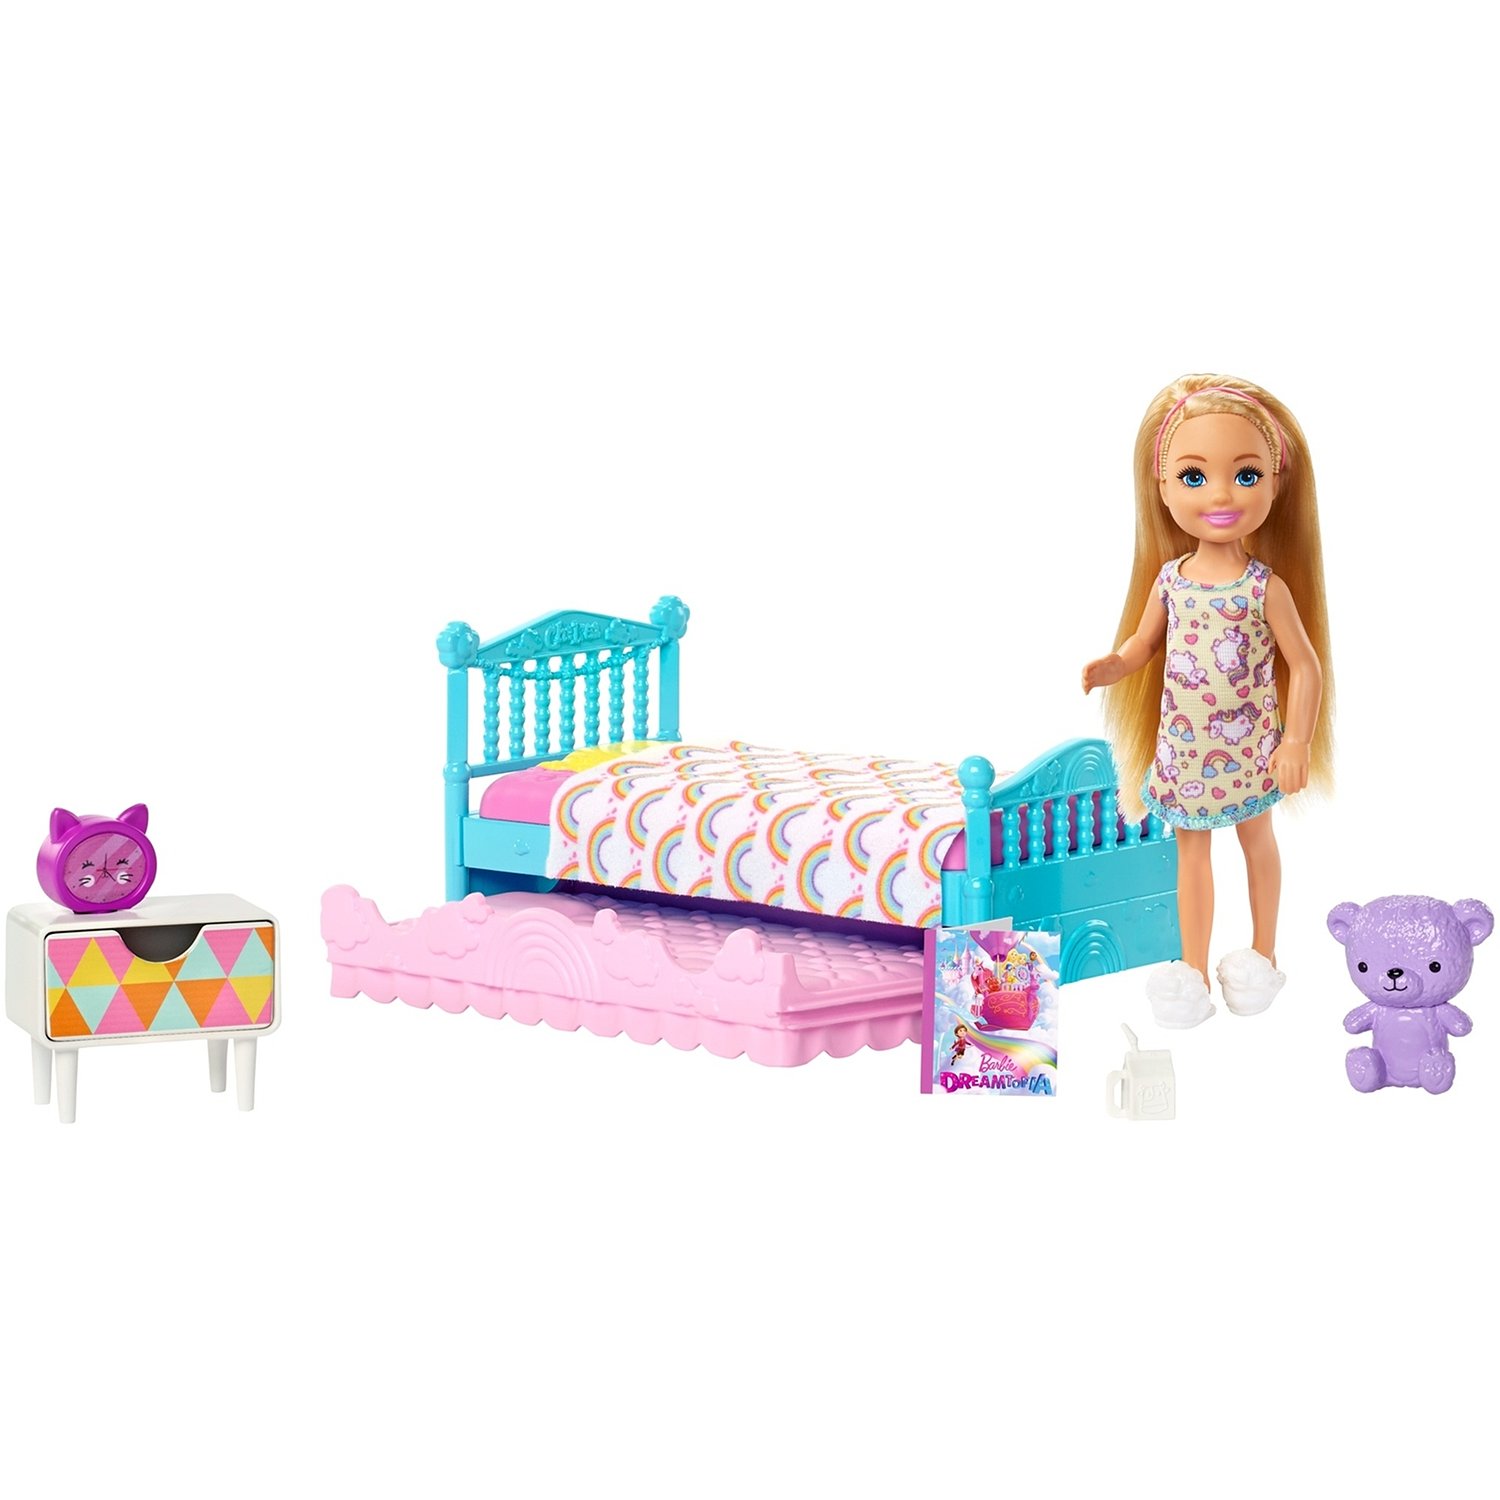 Кукла Barbie Челси и набор мебели спальня, 12 см, fxg83